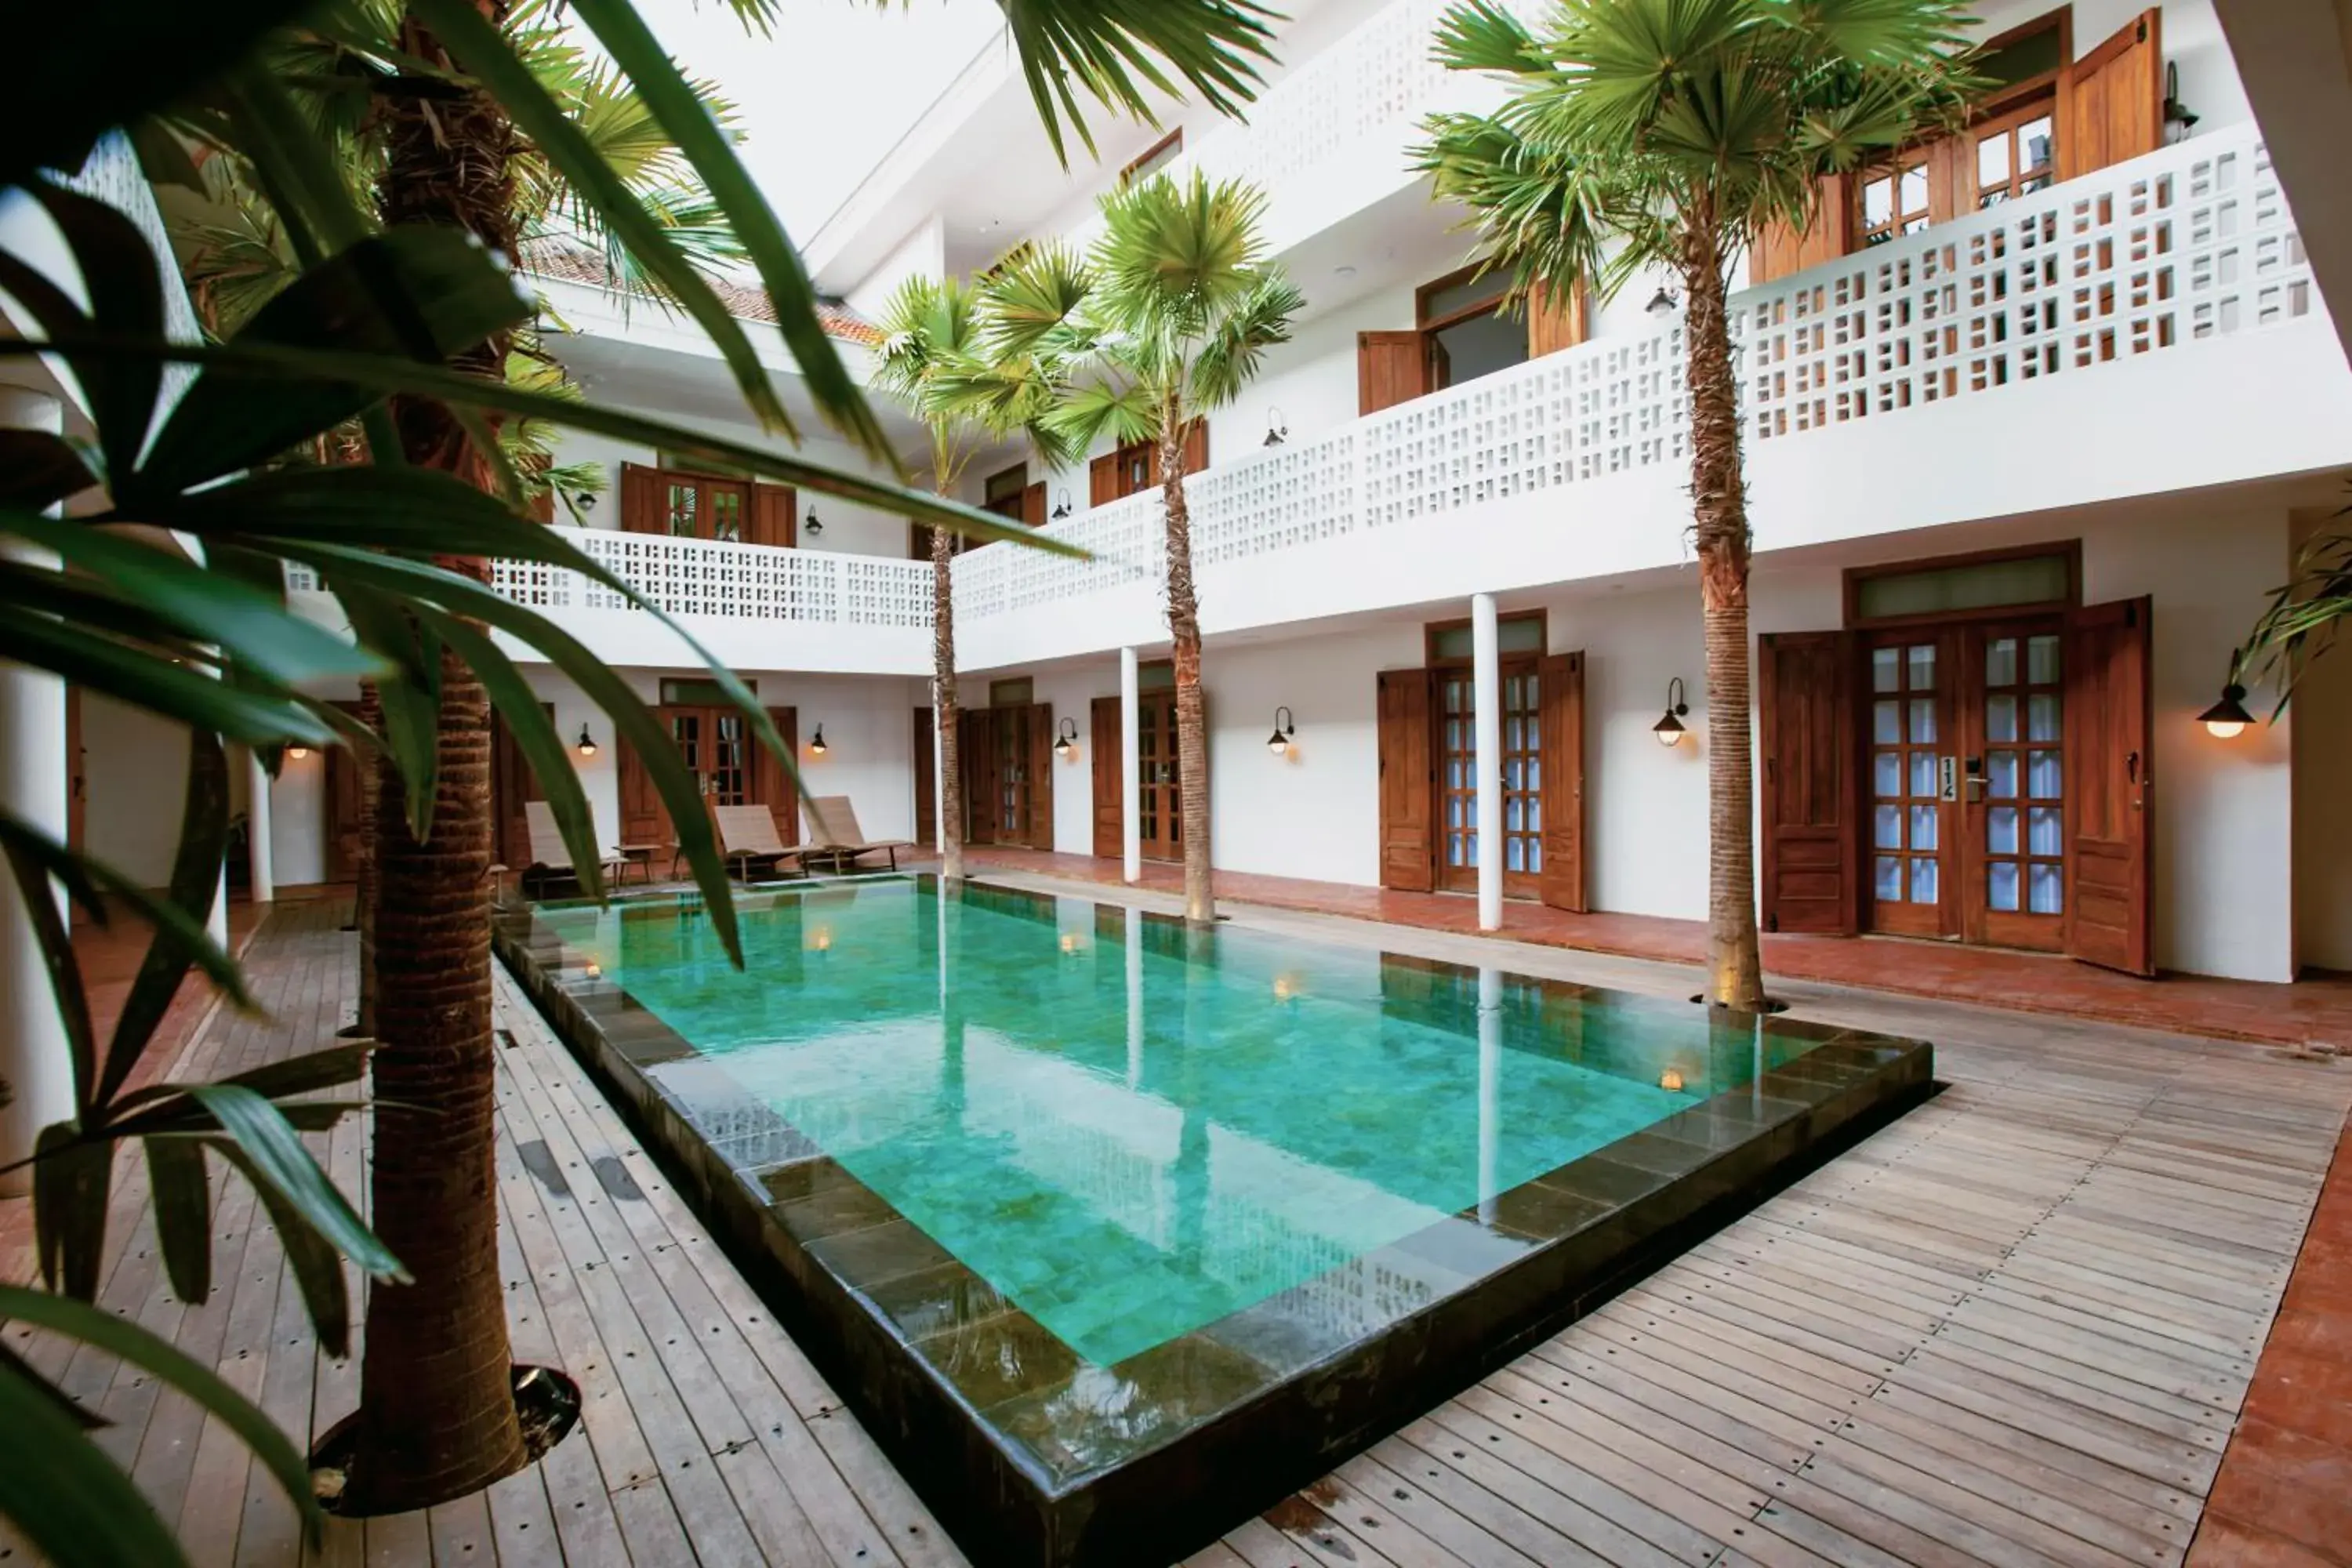 Swimming Pool in Adhisthana Hotel Yogyakarta